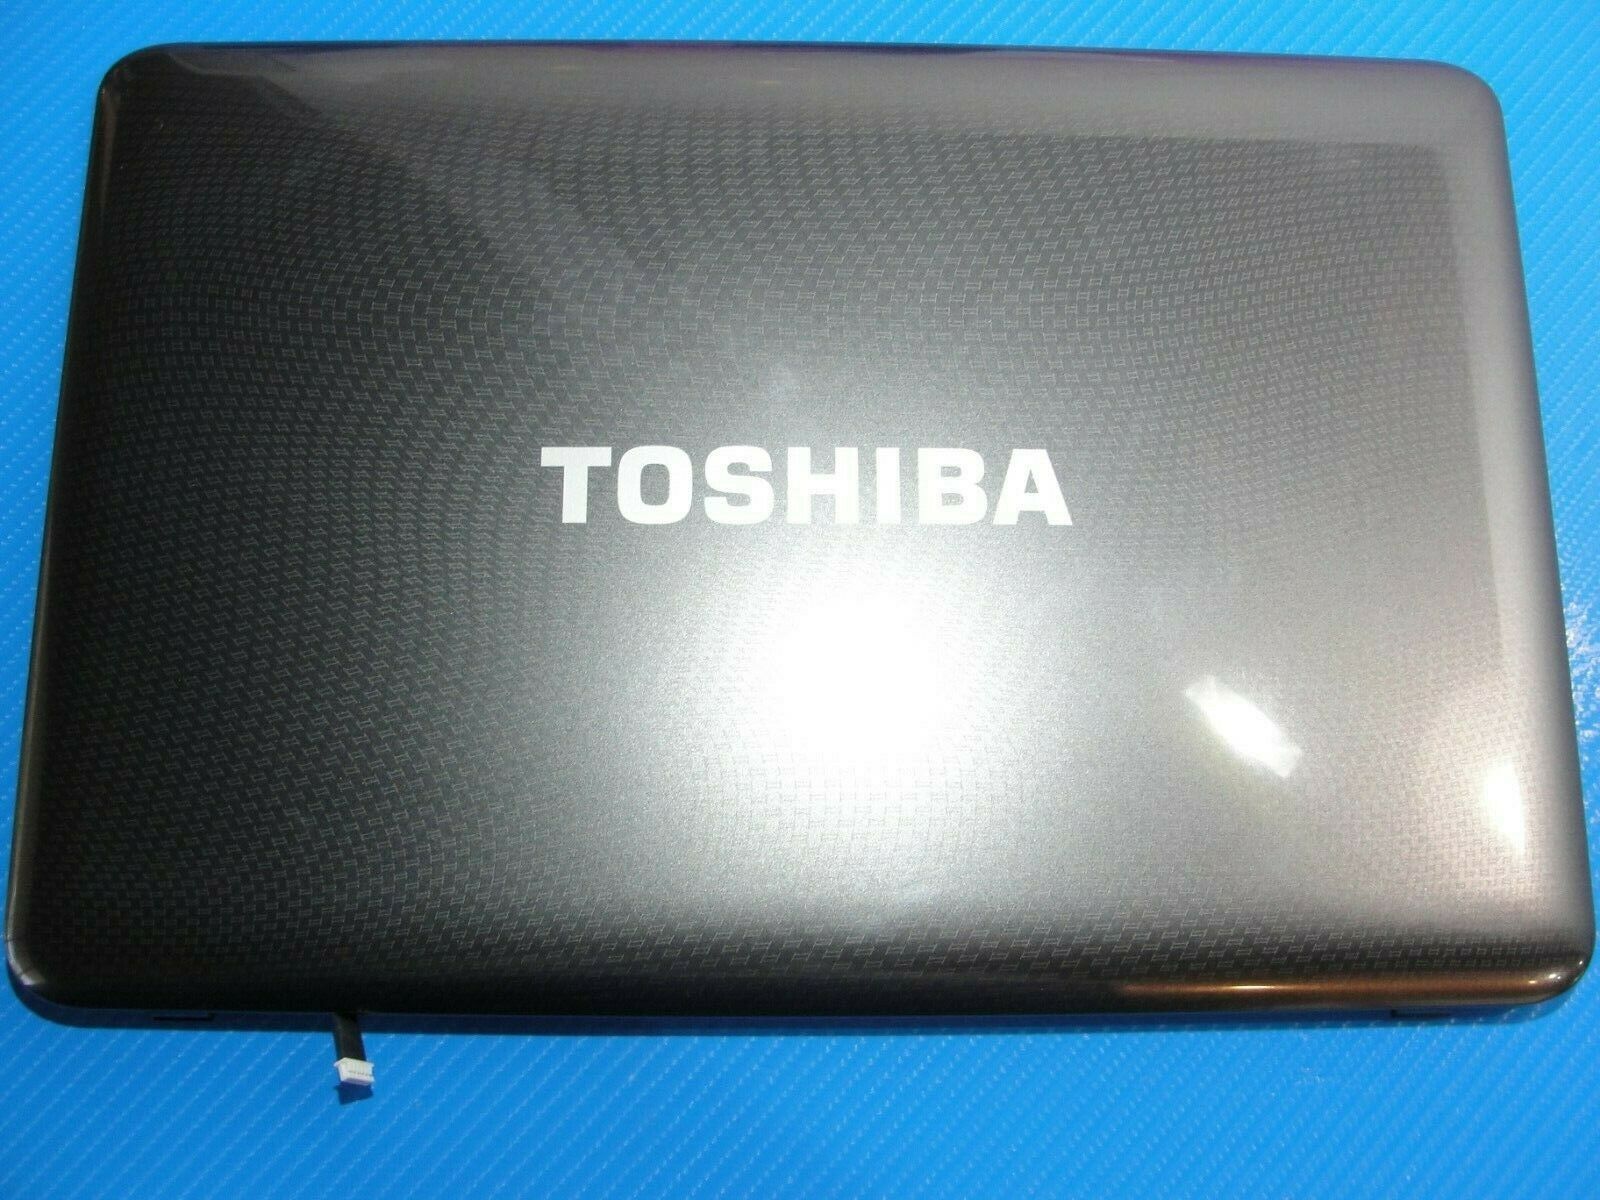 Toshiba Satellite L645D-S4056 14